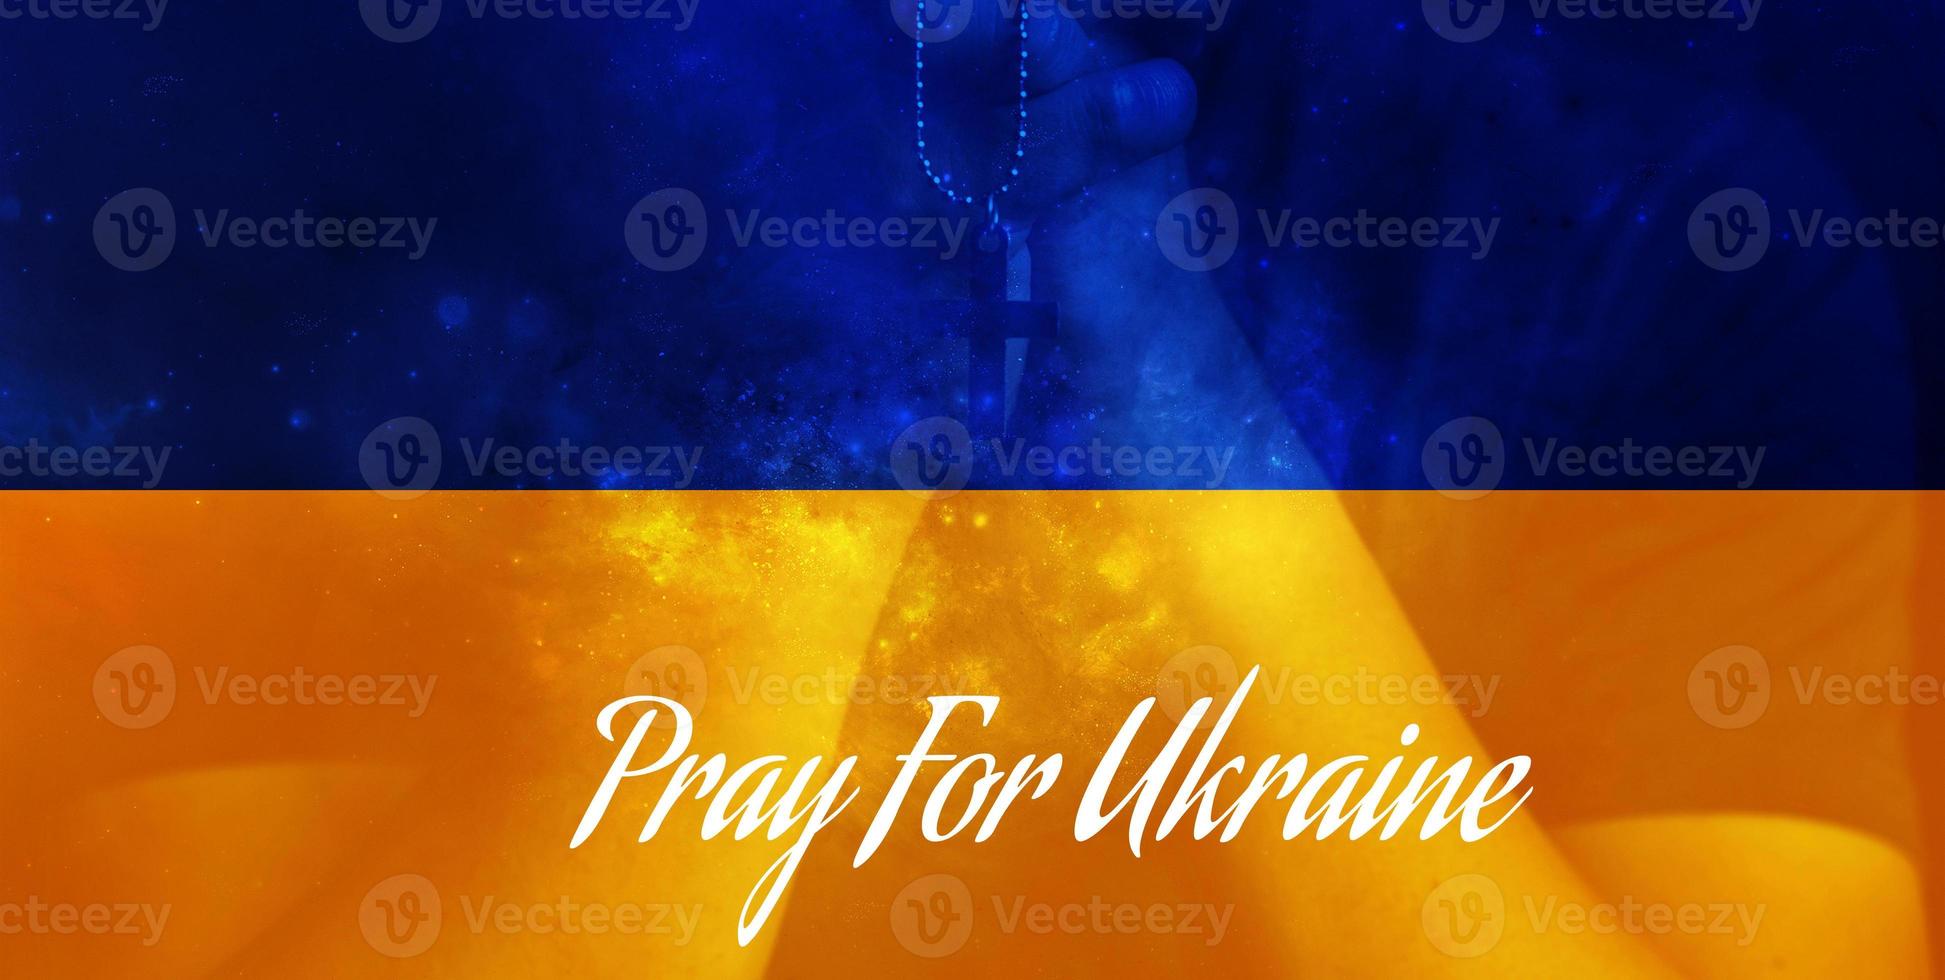 bid voor oekraïne, vlag oekraïne. rusland vs oekraïne stop oorlog, rusland en oekraïne vechten. bid oekraïne foto